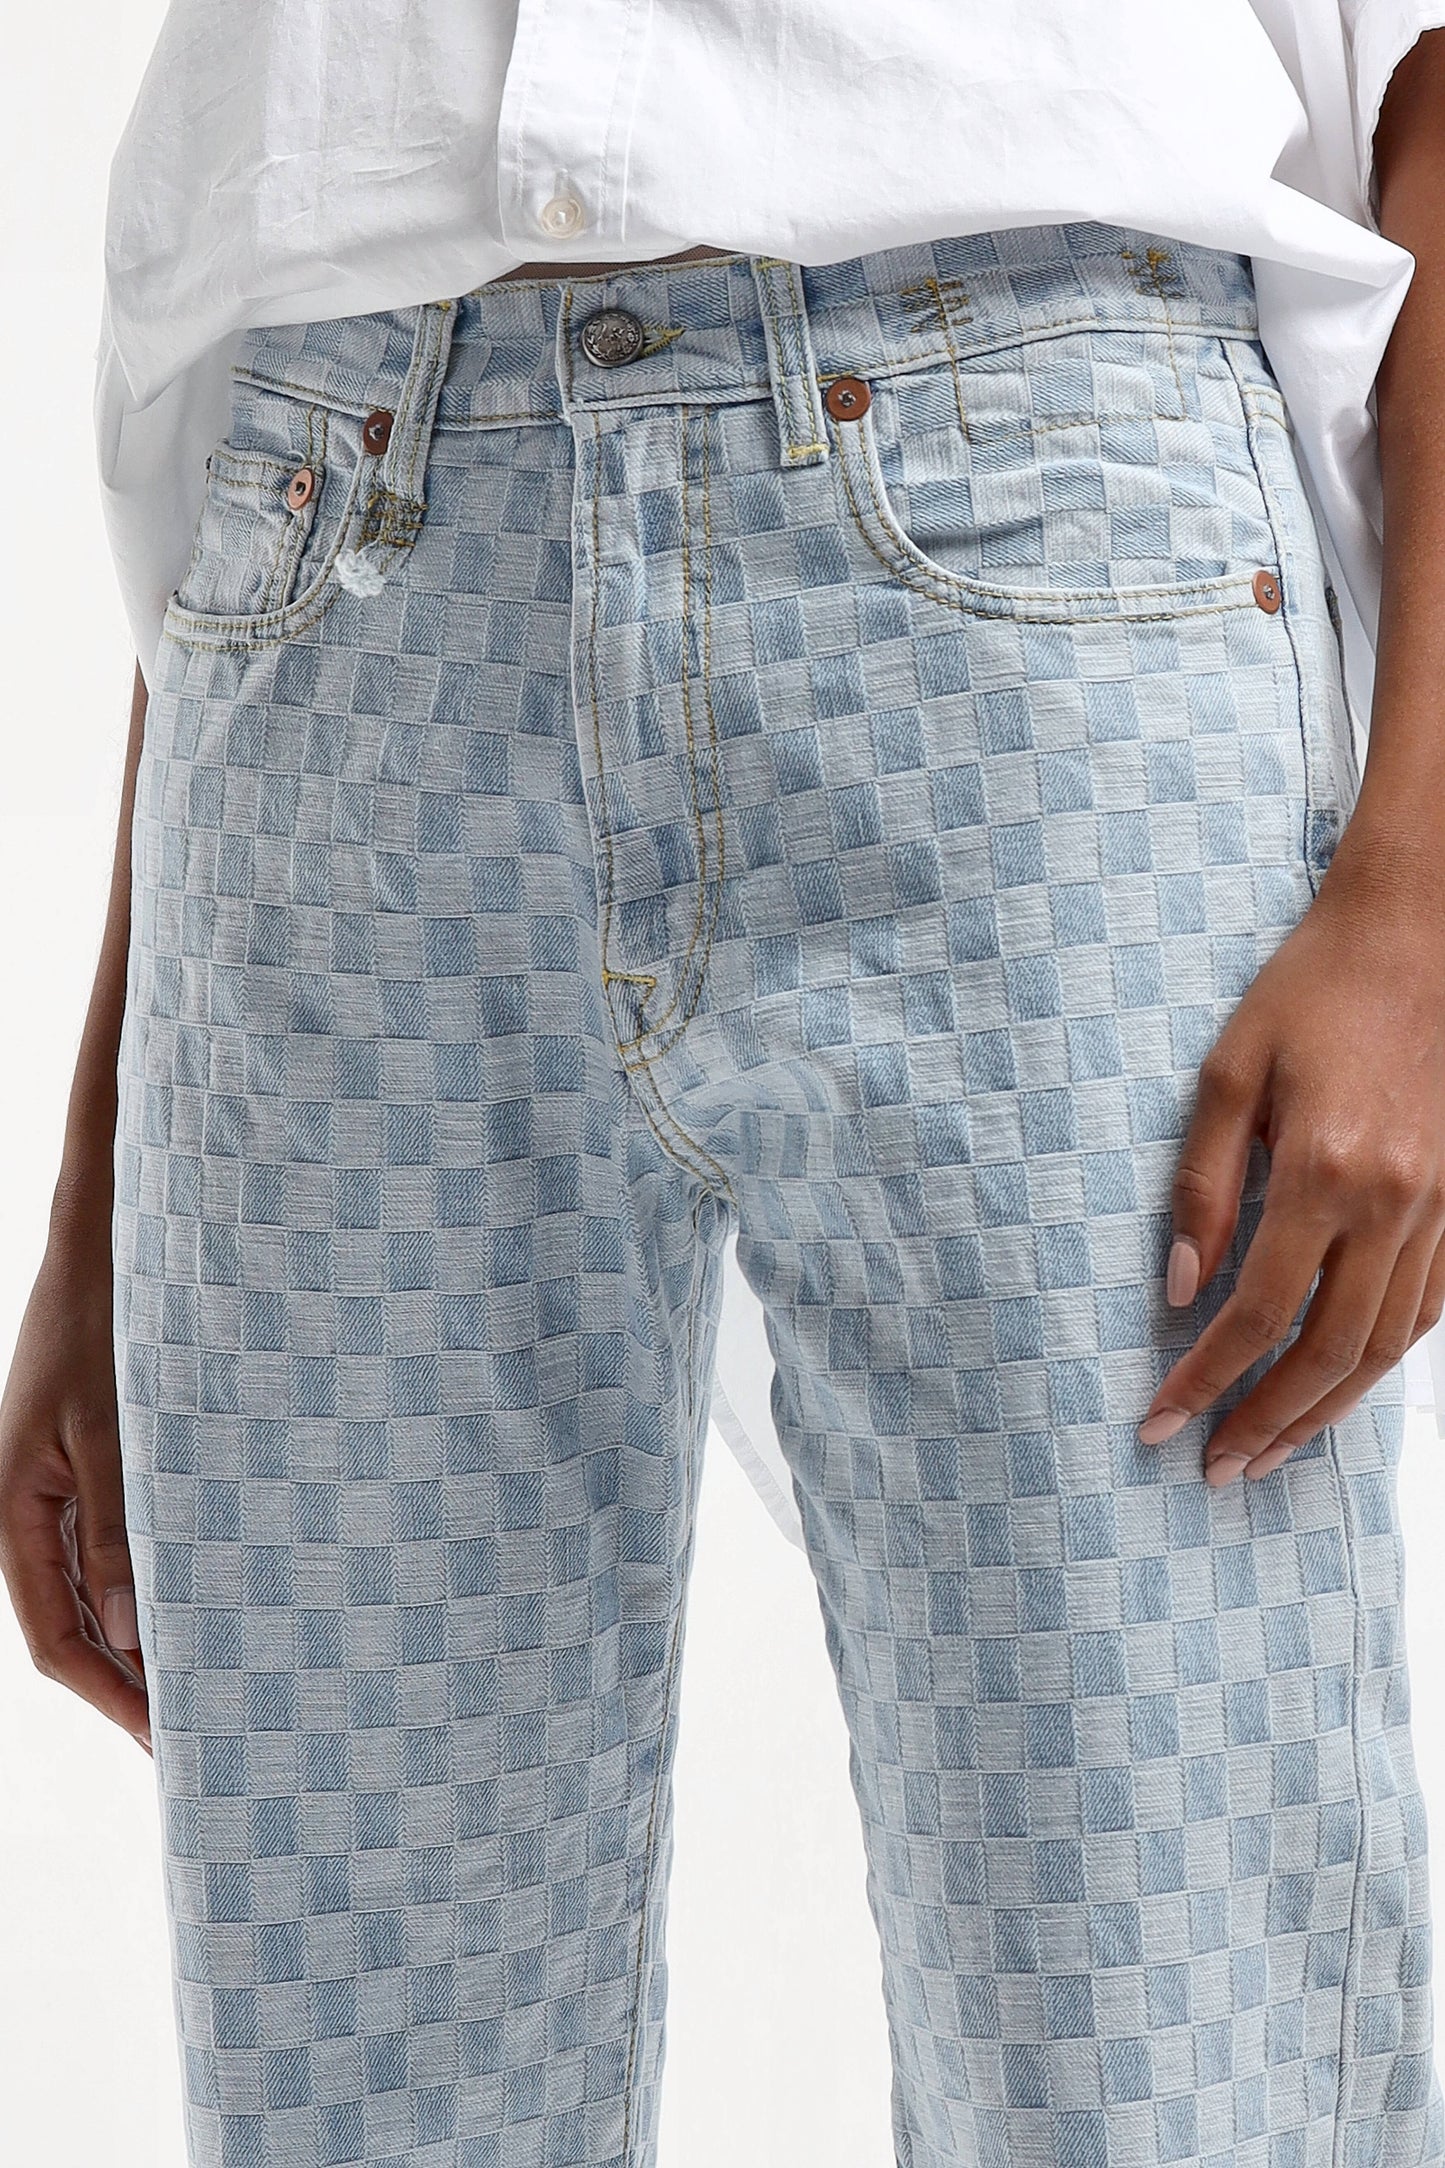 Jeans Boyfriend in CheckeredR13 - Anita Hass